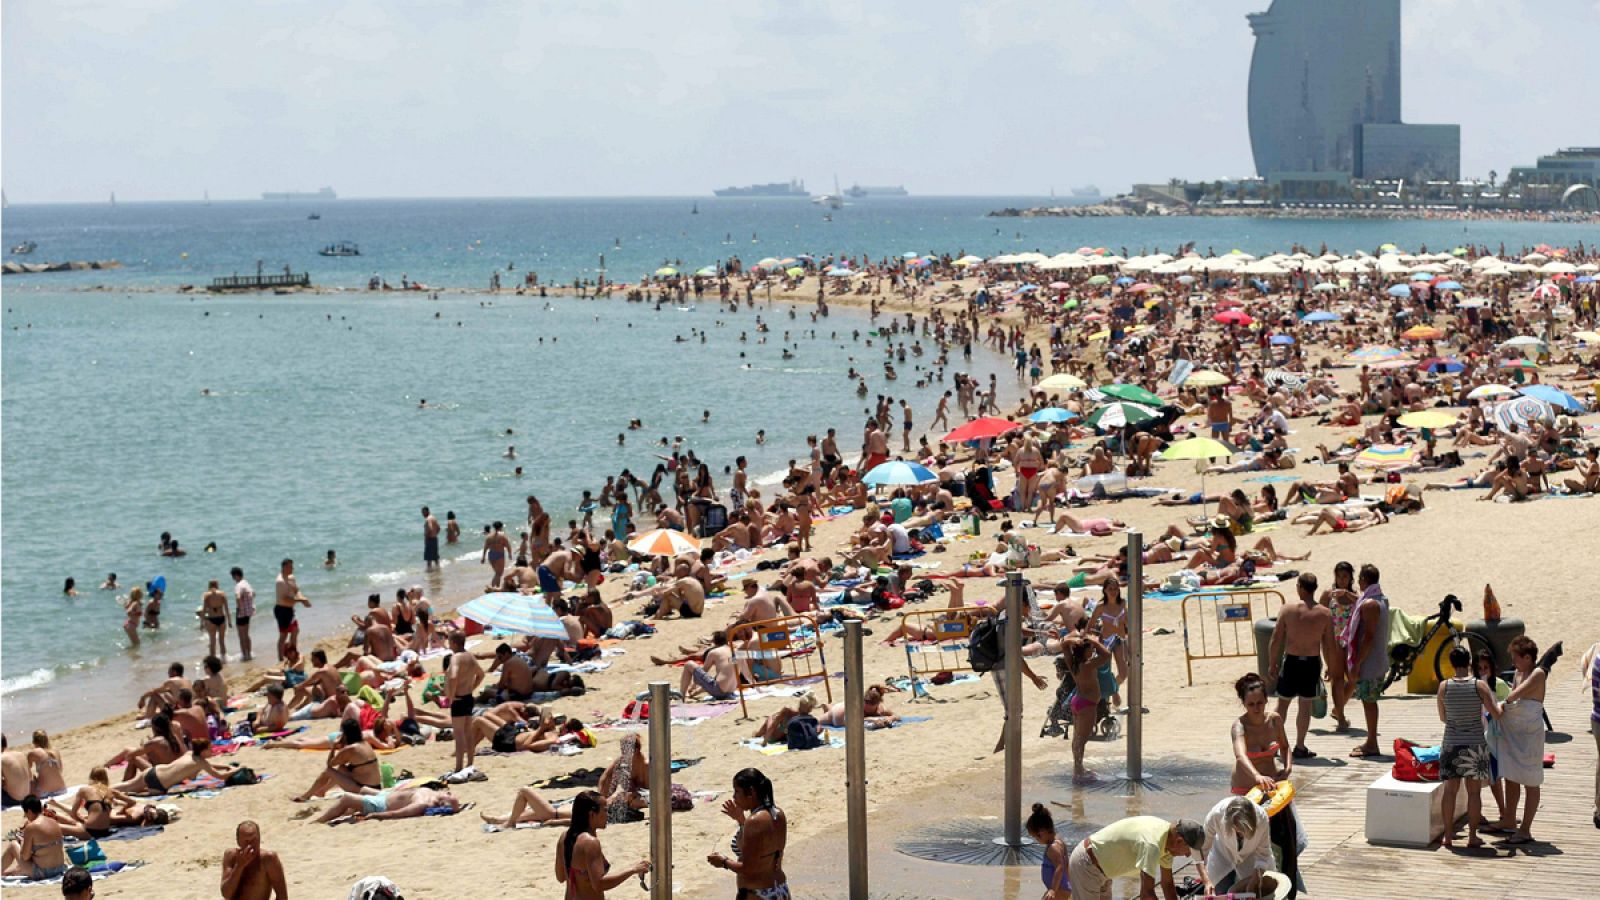 La playa de la Barceloneta llena de gente que disfruta del mar en Barcelona